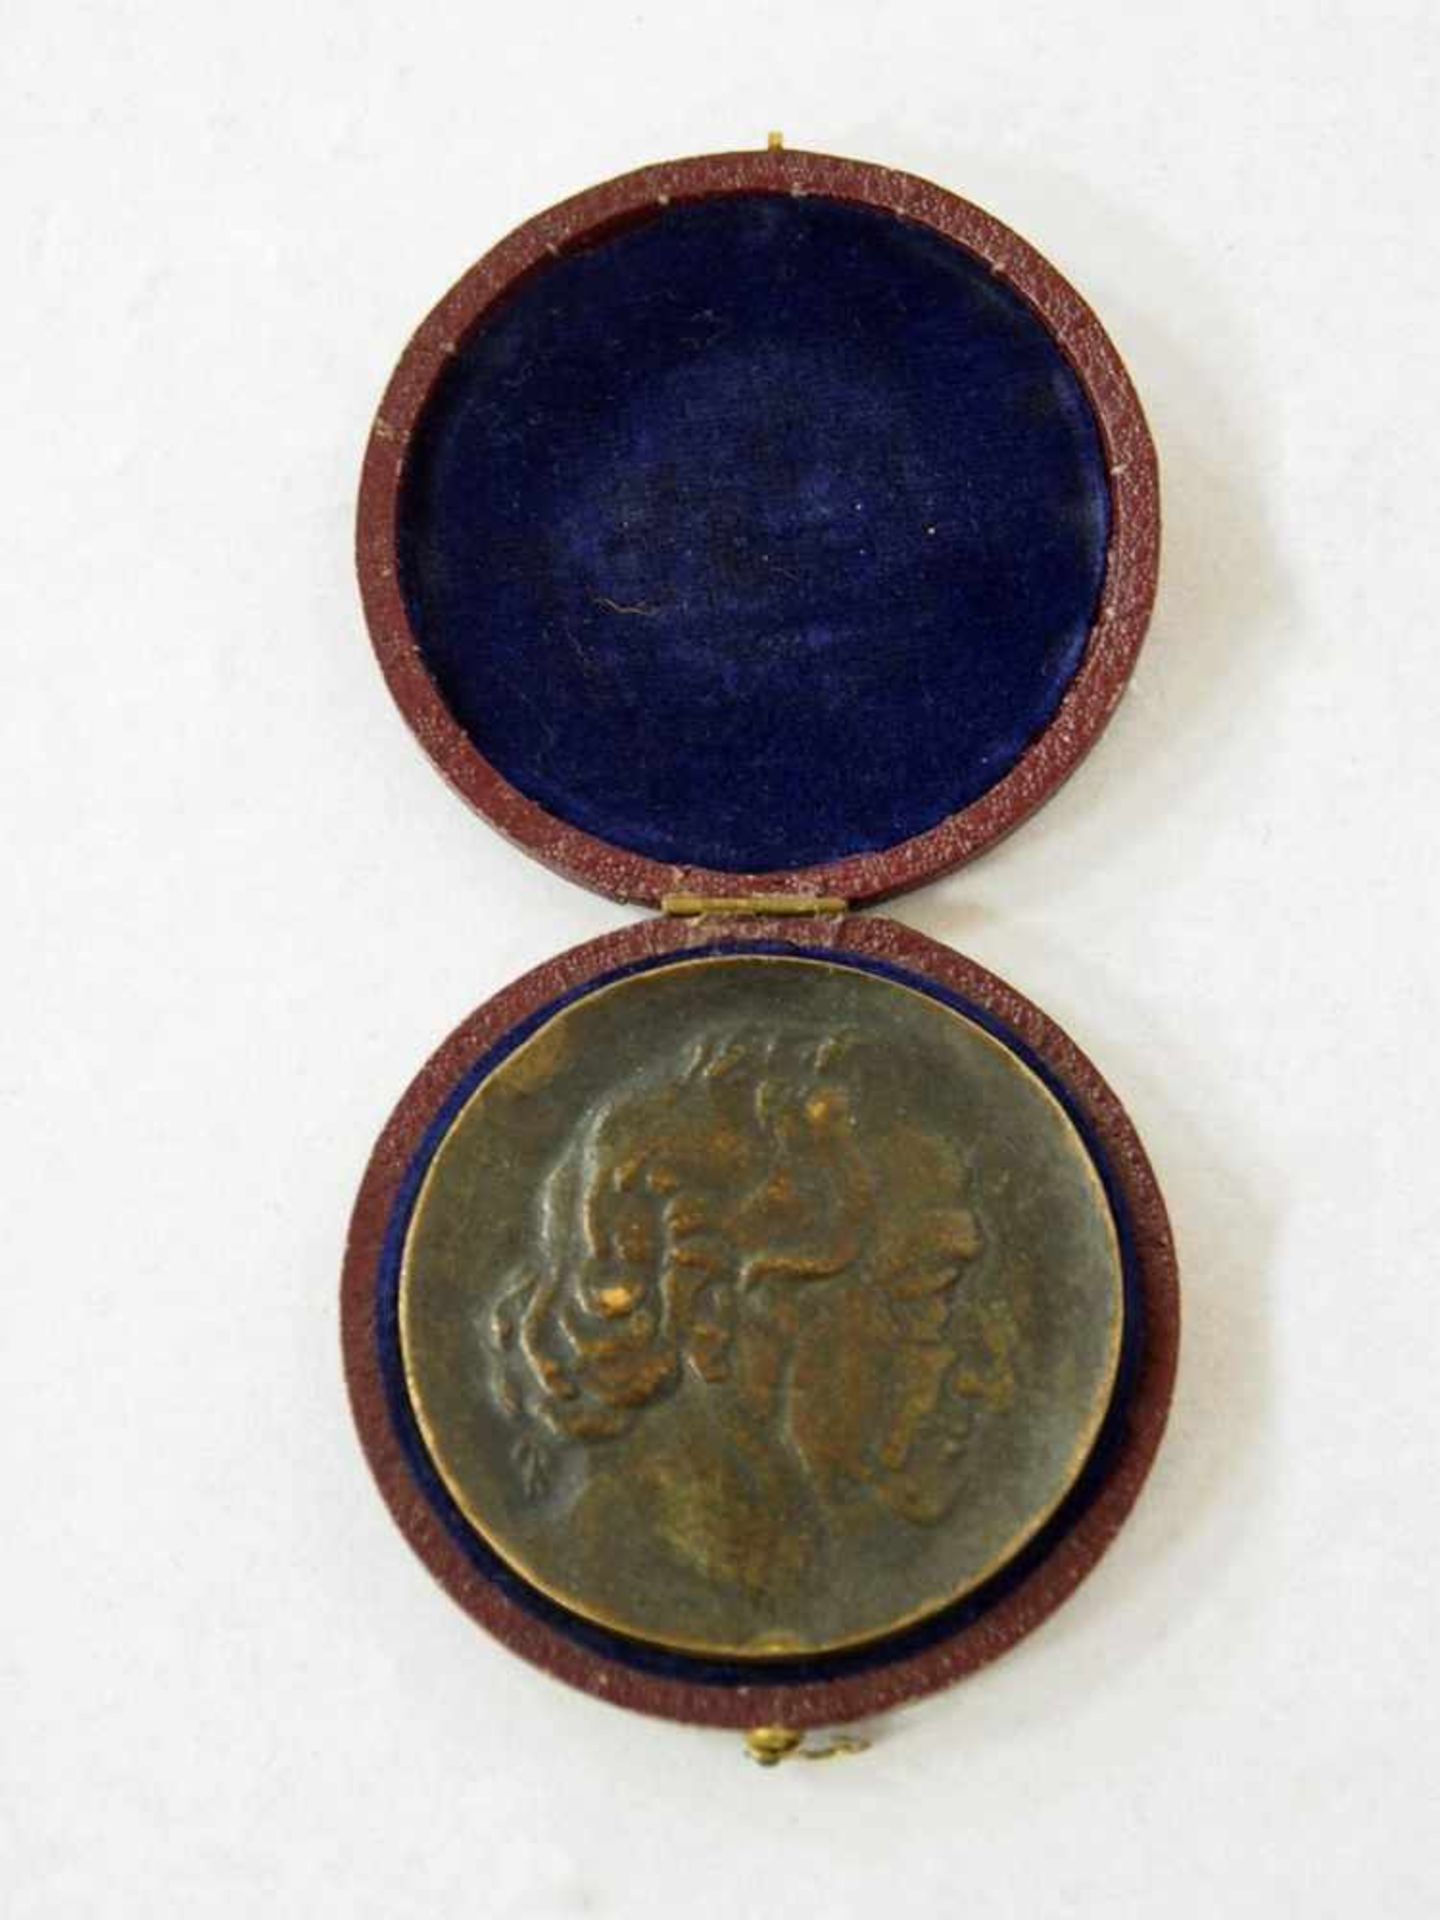 Goethe-Medaille von 1949Bronze, Durchmesser 5,2 cm, in Originalbox- - -25.00 % buyer's premium on